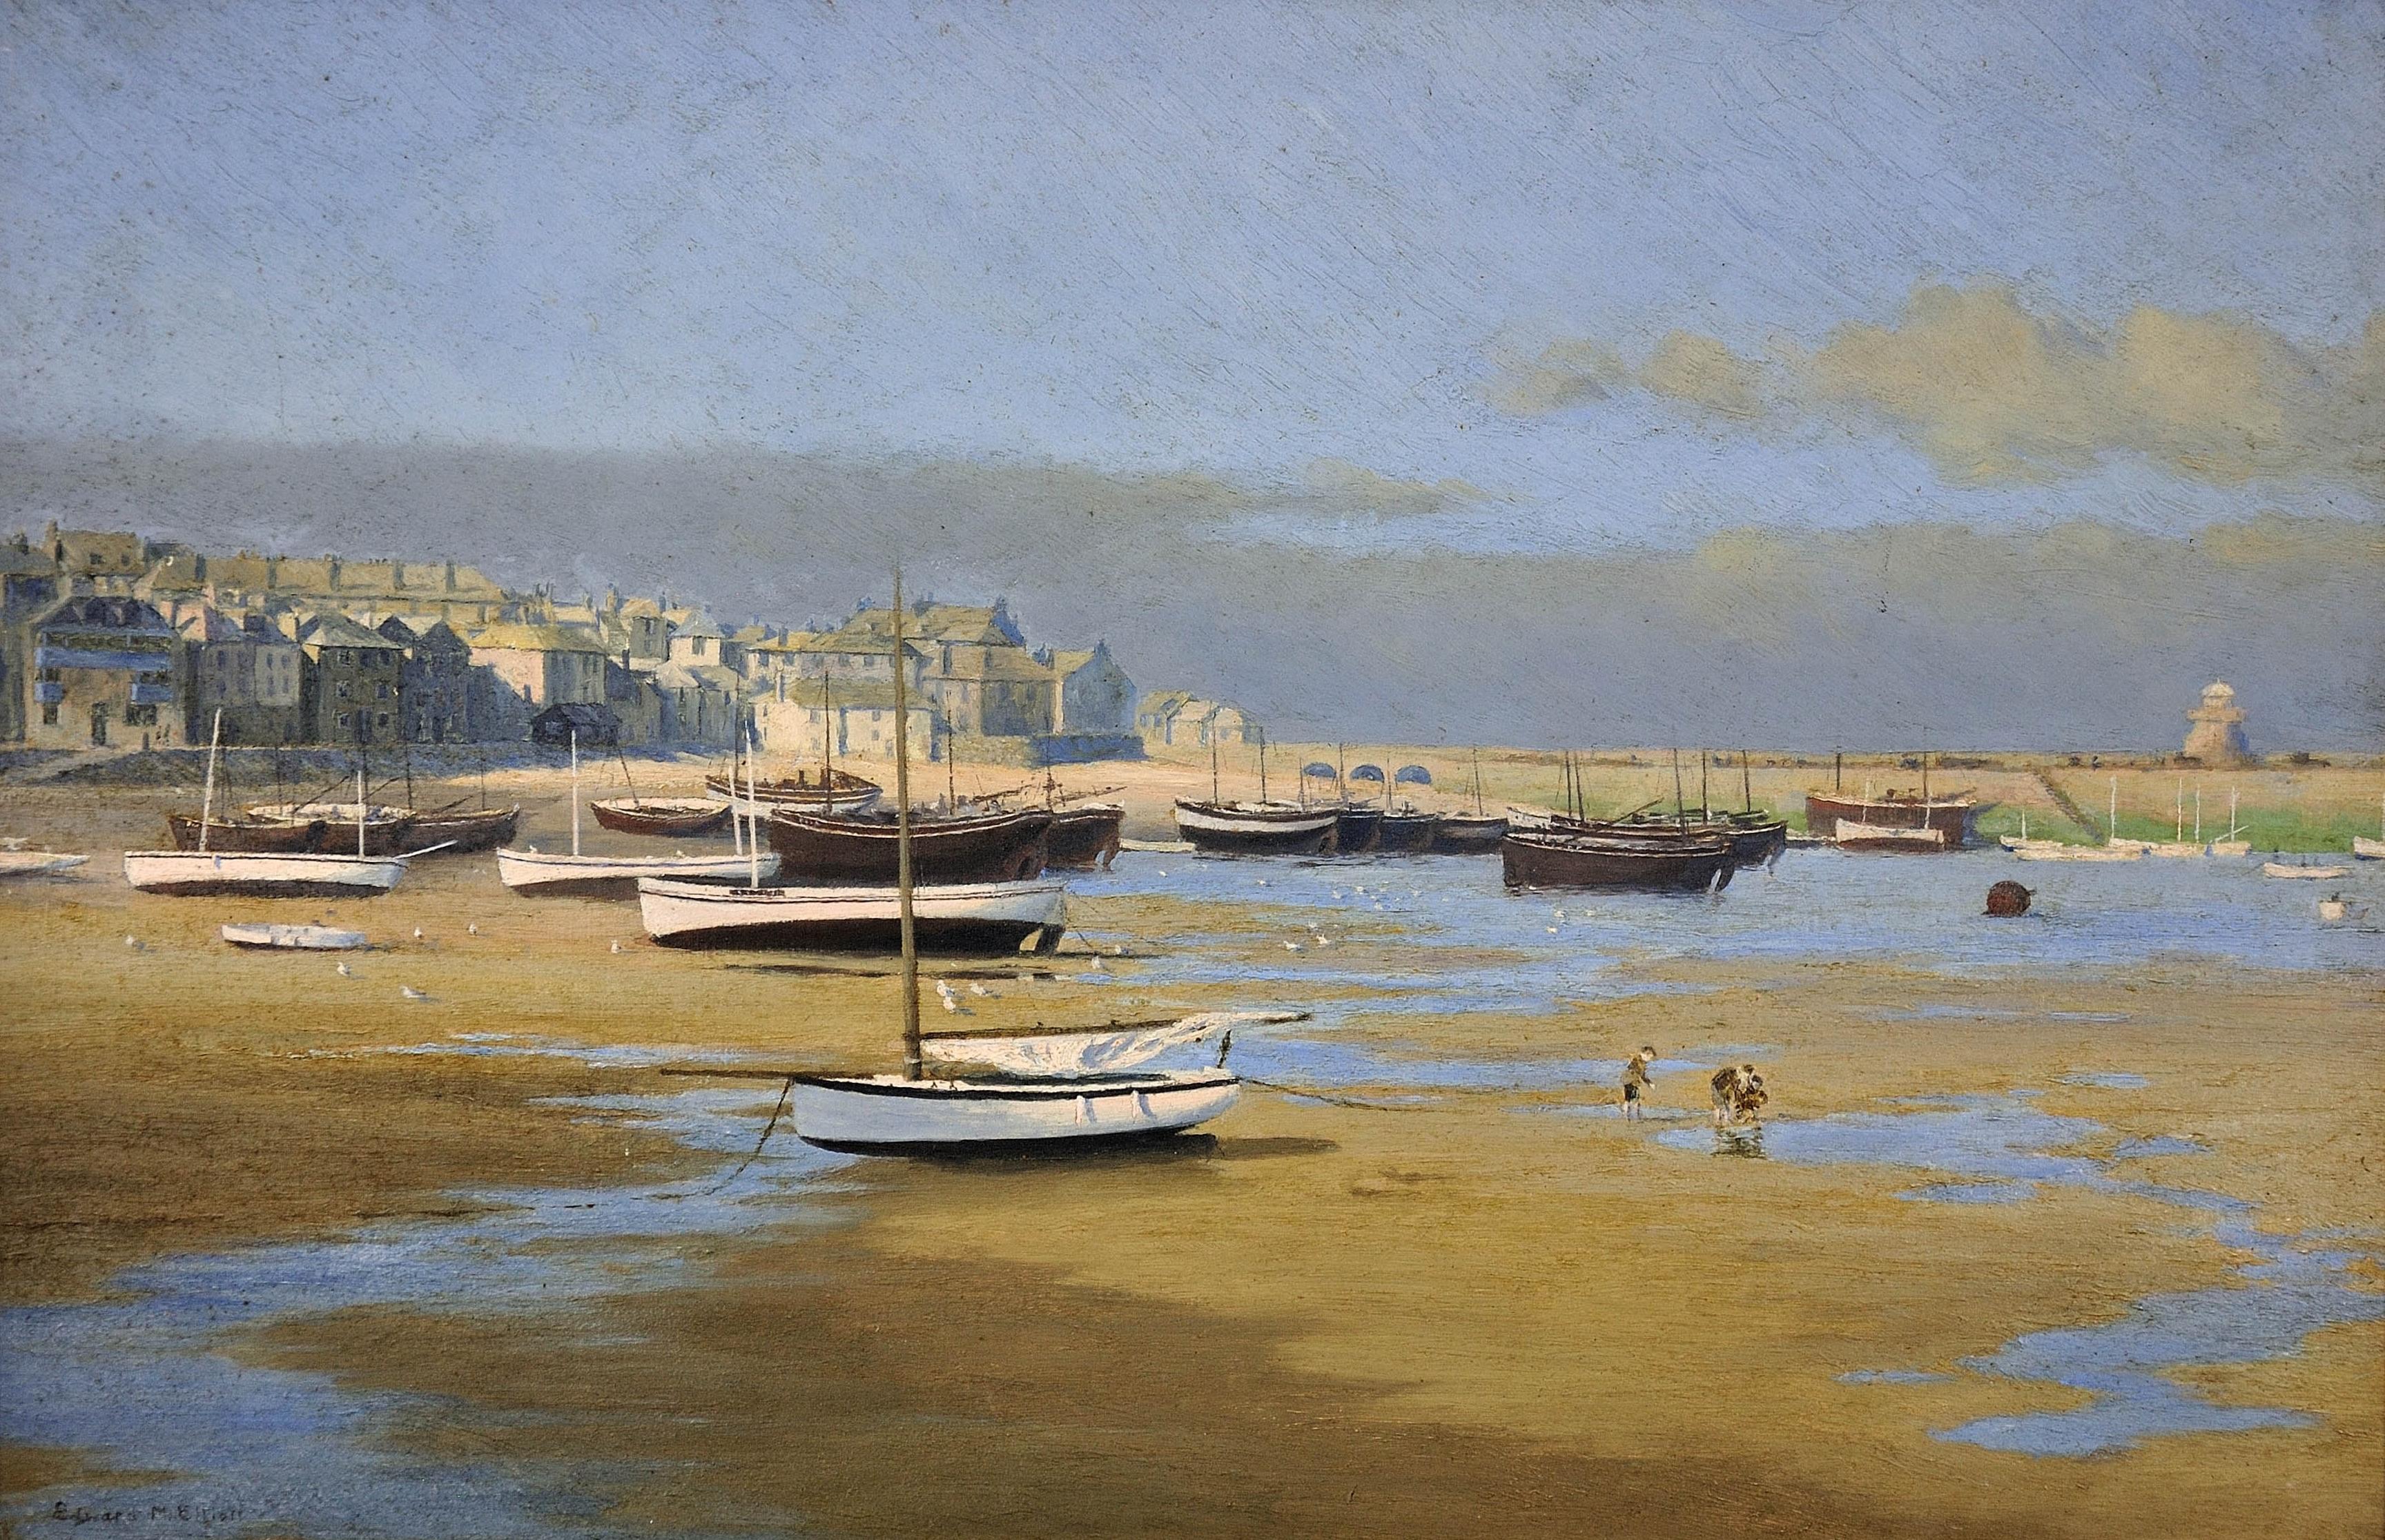 Der Hafen von St. Ives bei Ebbe. Smeaton's Pier. Das edwardianische Cornwall. Original Öl. – Painting von Edward Matthew Elliott